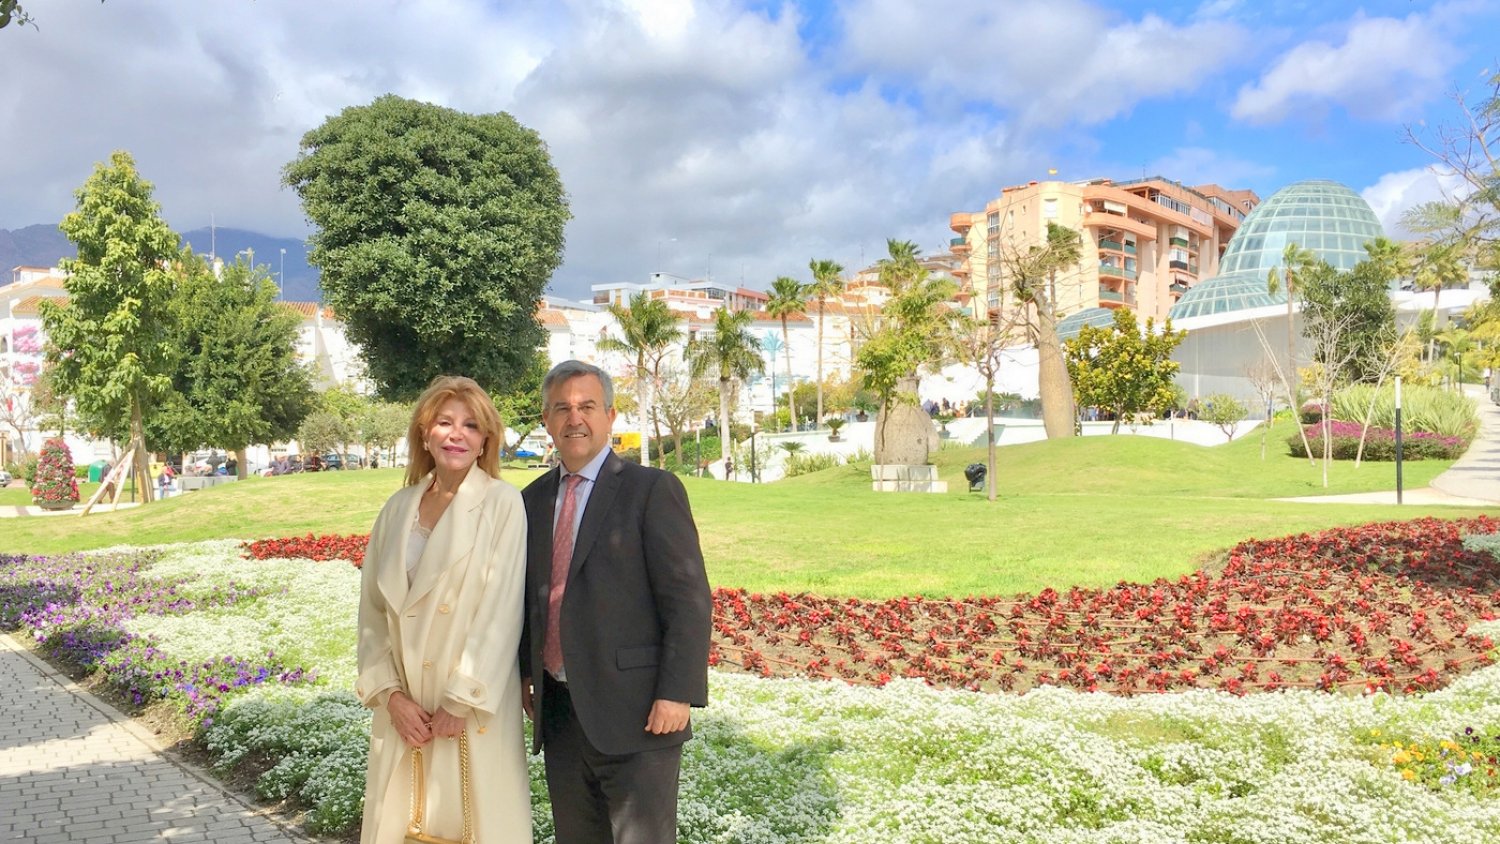 García Urbano y la baronesa Thyssen inauguran 'Los jardines de Carmen Thyssen' en el Parque Botánico de Estepona